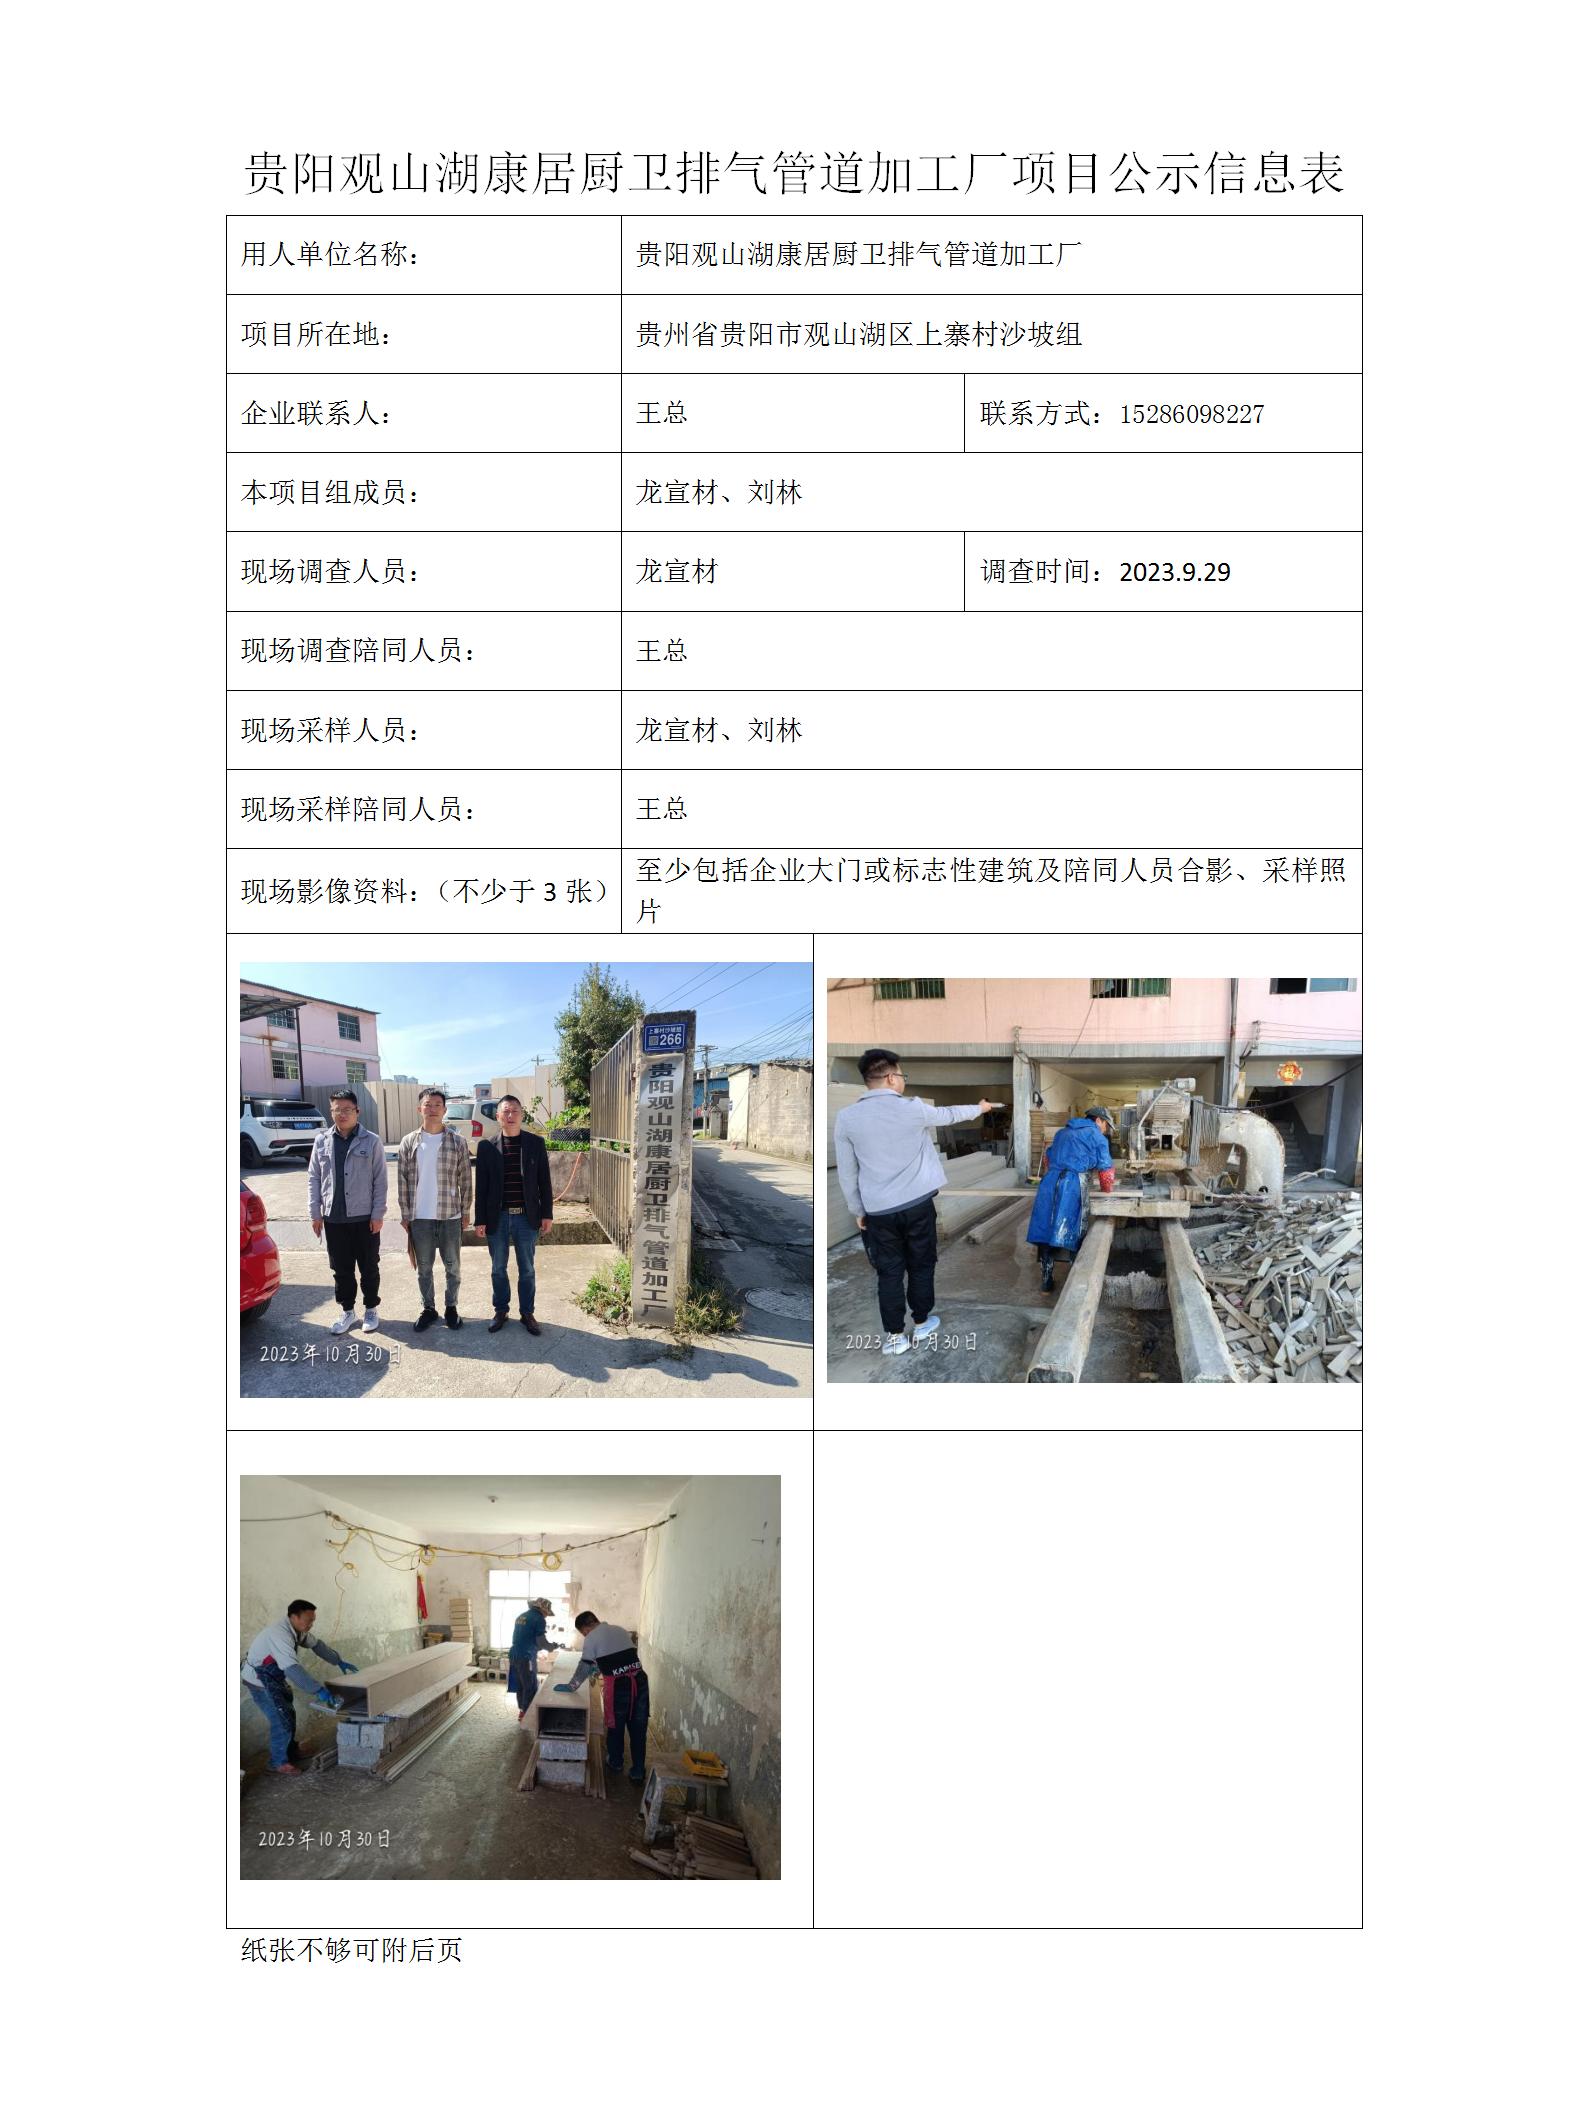 贵阳观山湖康居厨卫排气管道加工厂项目公示信息表_01.jpg